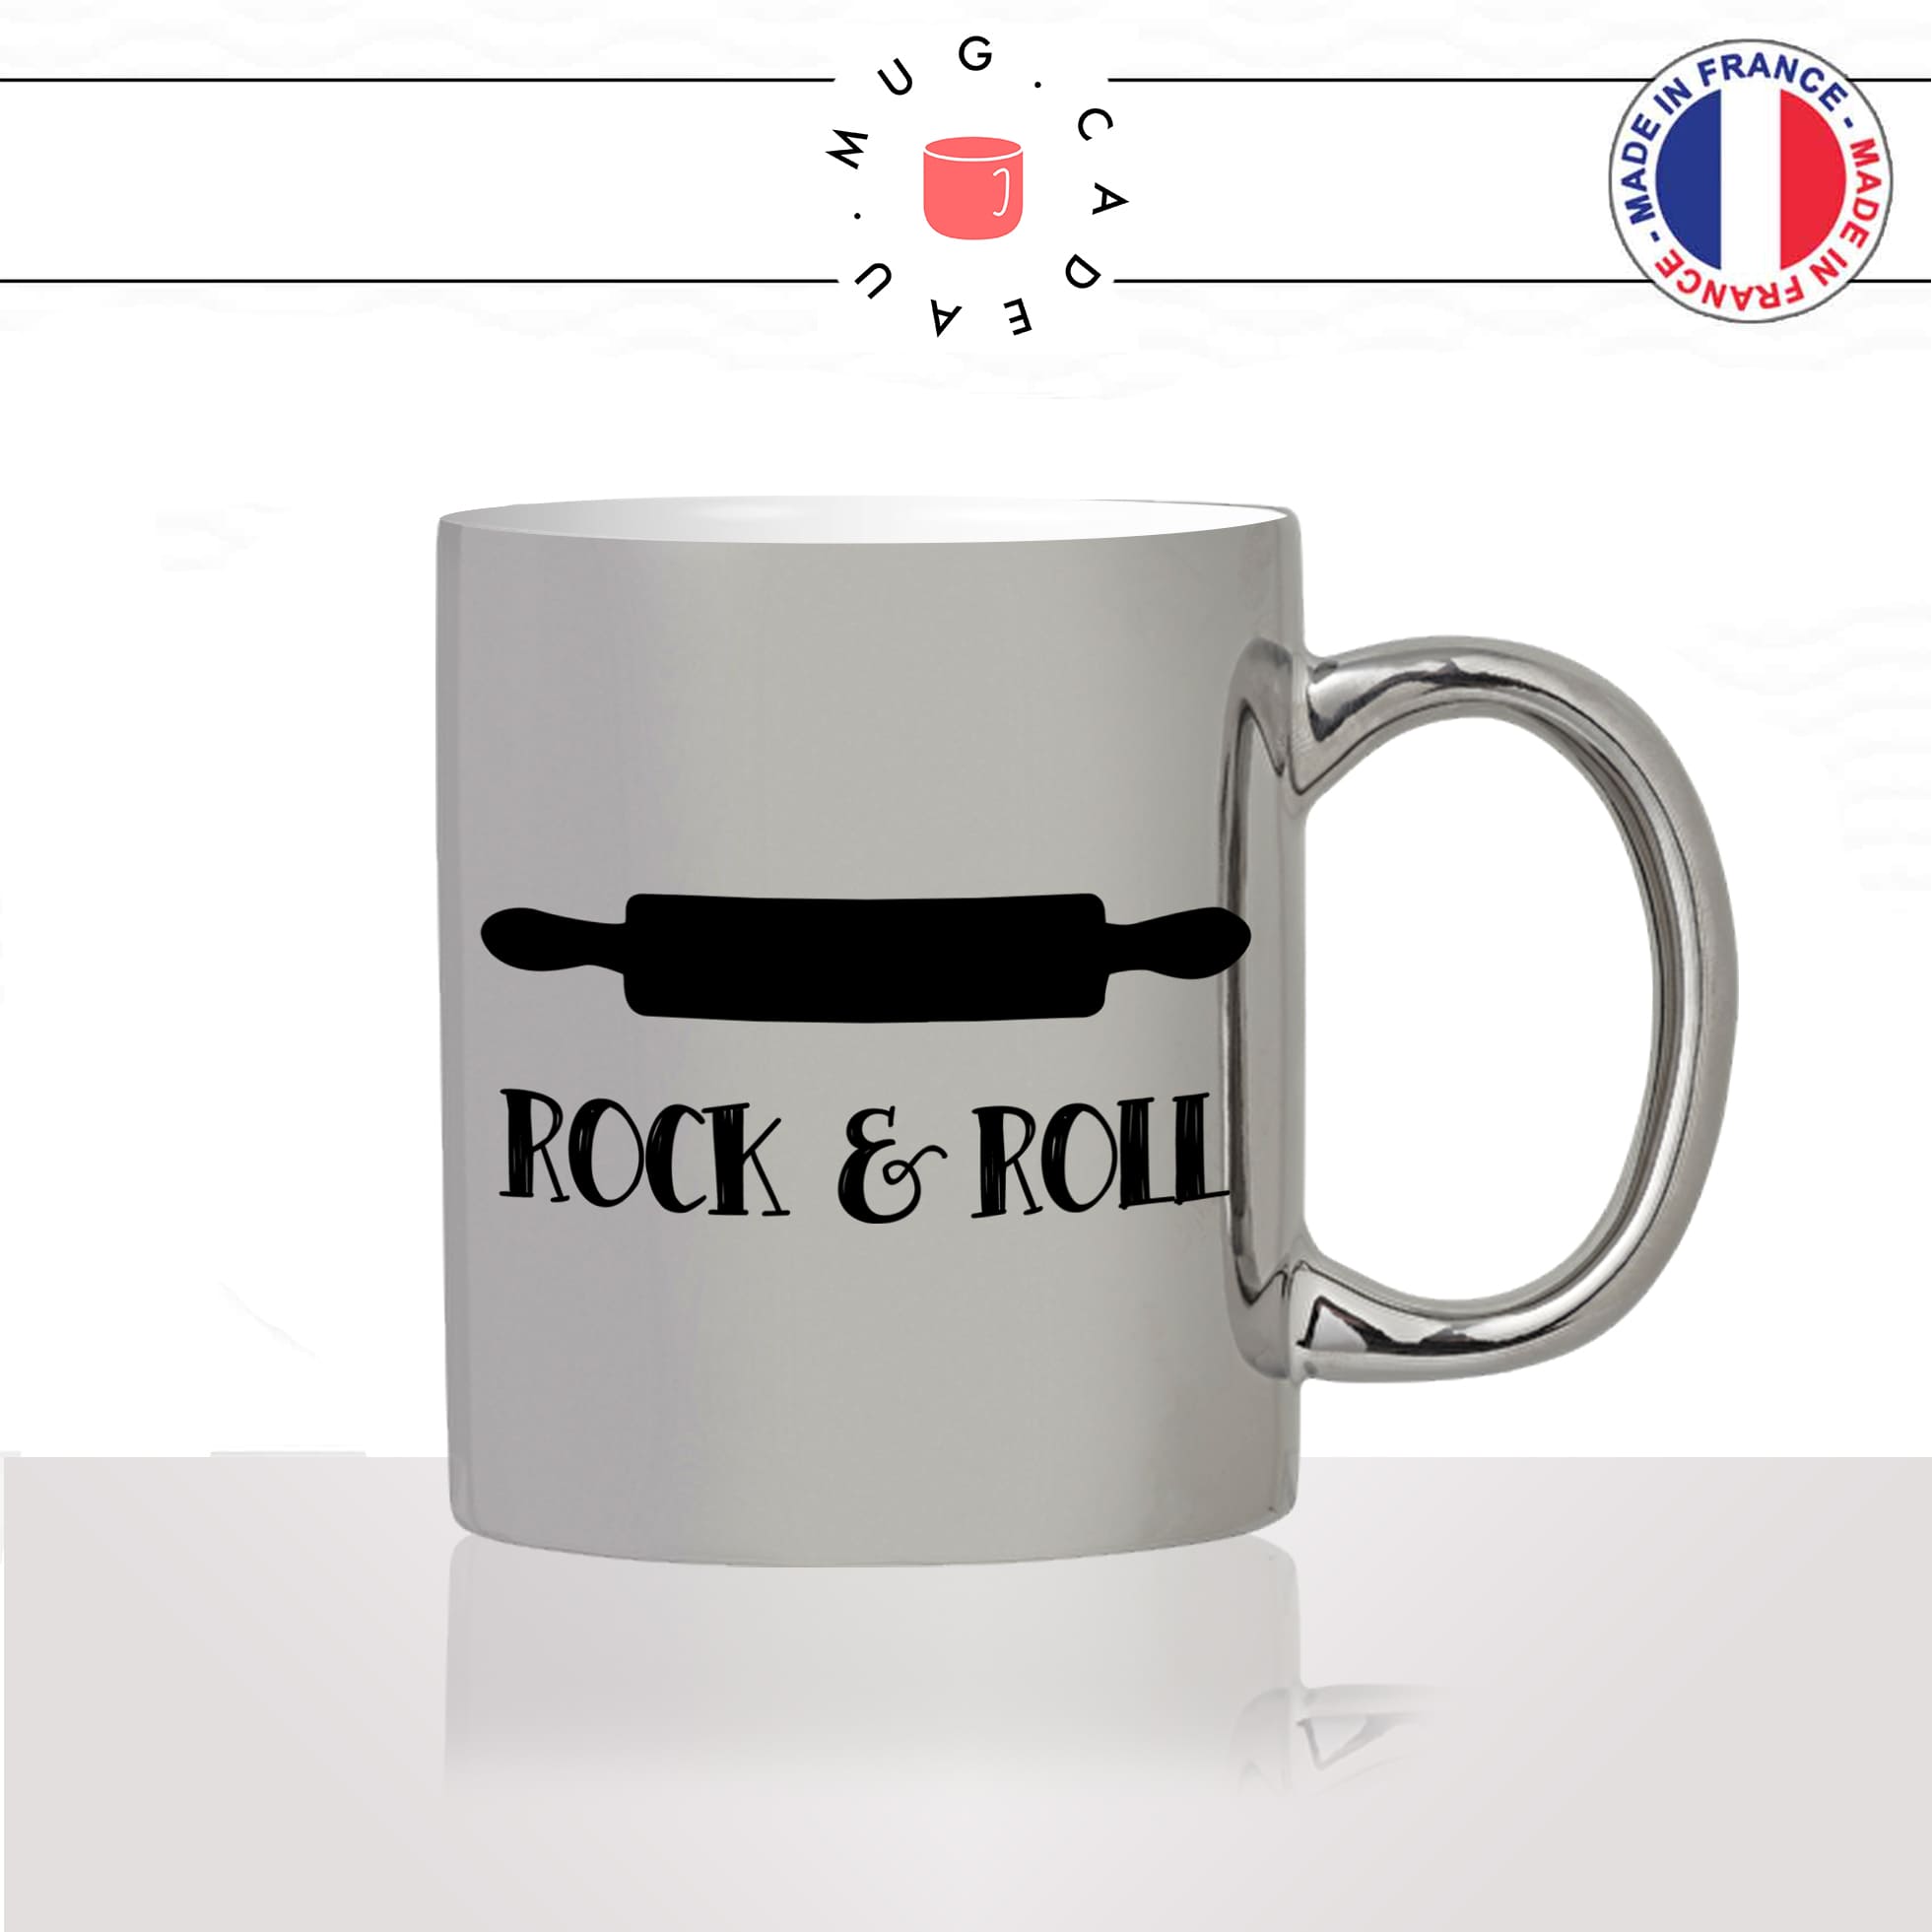 mug-tasse-argent-argenté-silver-rock-and-roll-rouleau-a-patisserie-cuisine-humour-stylé-passion-idée-cadeau-fun-cool-café-thé2